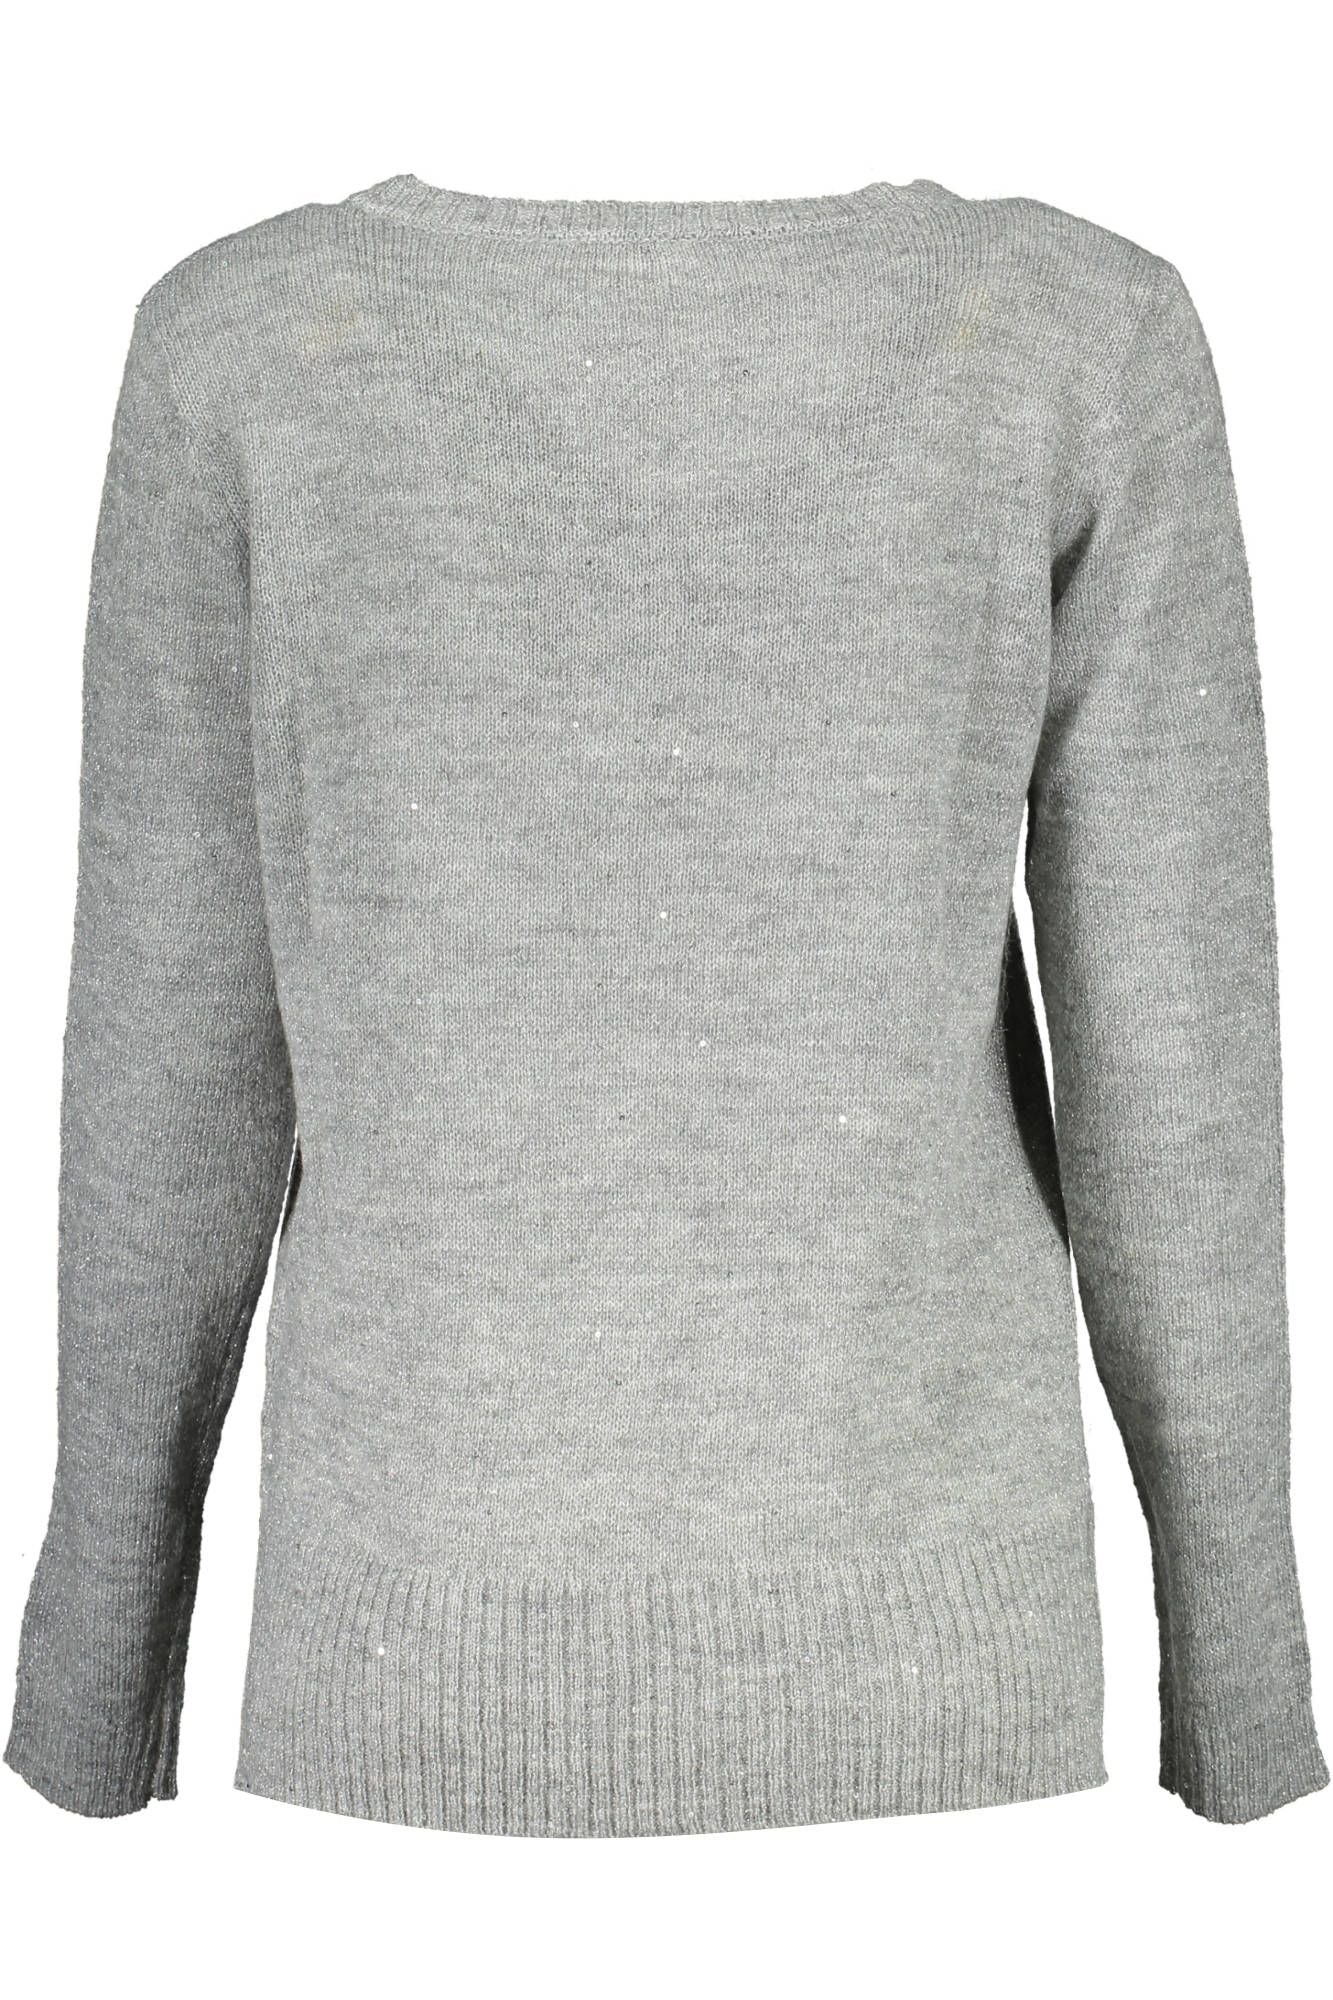 U.S. Polo Assn. Silver Nylon Sweater